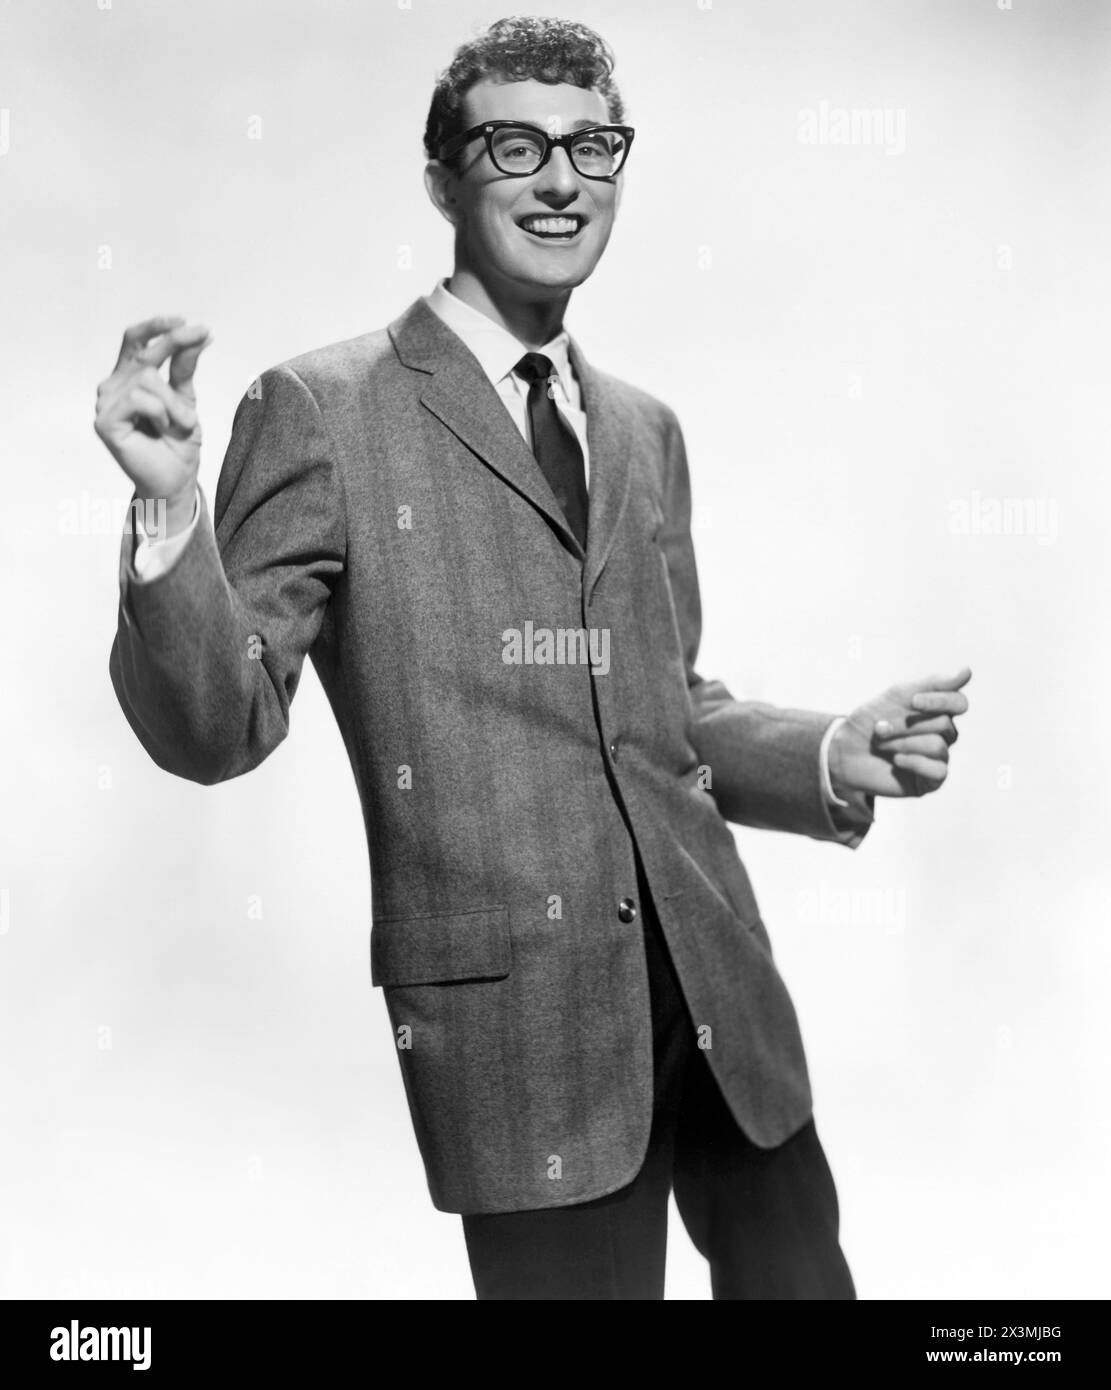 Buddy Holly, pioniere del rock and roll americano nel 1957. Holly morì a 22 anni in un tragico incidente aereo nel 1959, insieme ai musicisti Richie Valens e J. P. Richardson (The Big Bopper), e al pilota Roger Peterson. (USA) Foto Stock